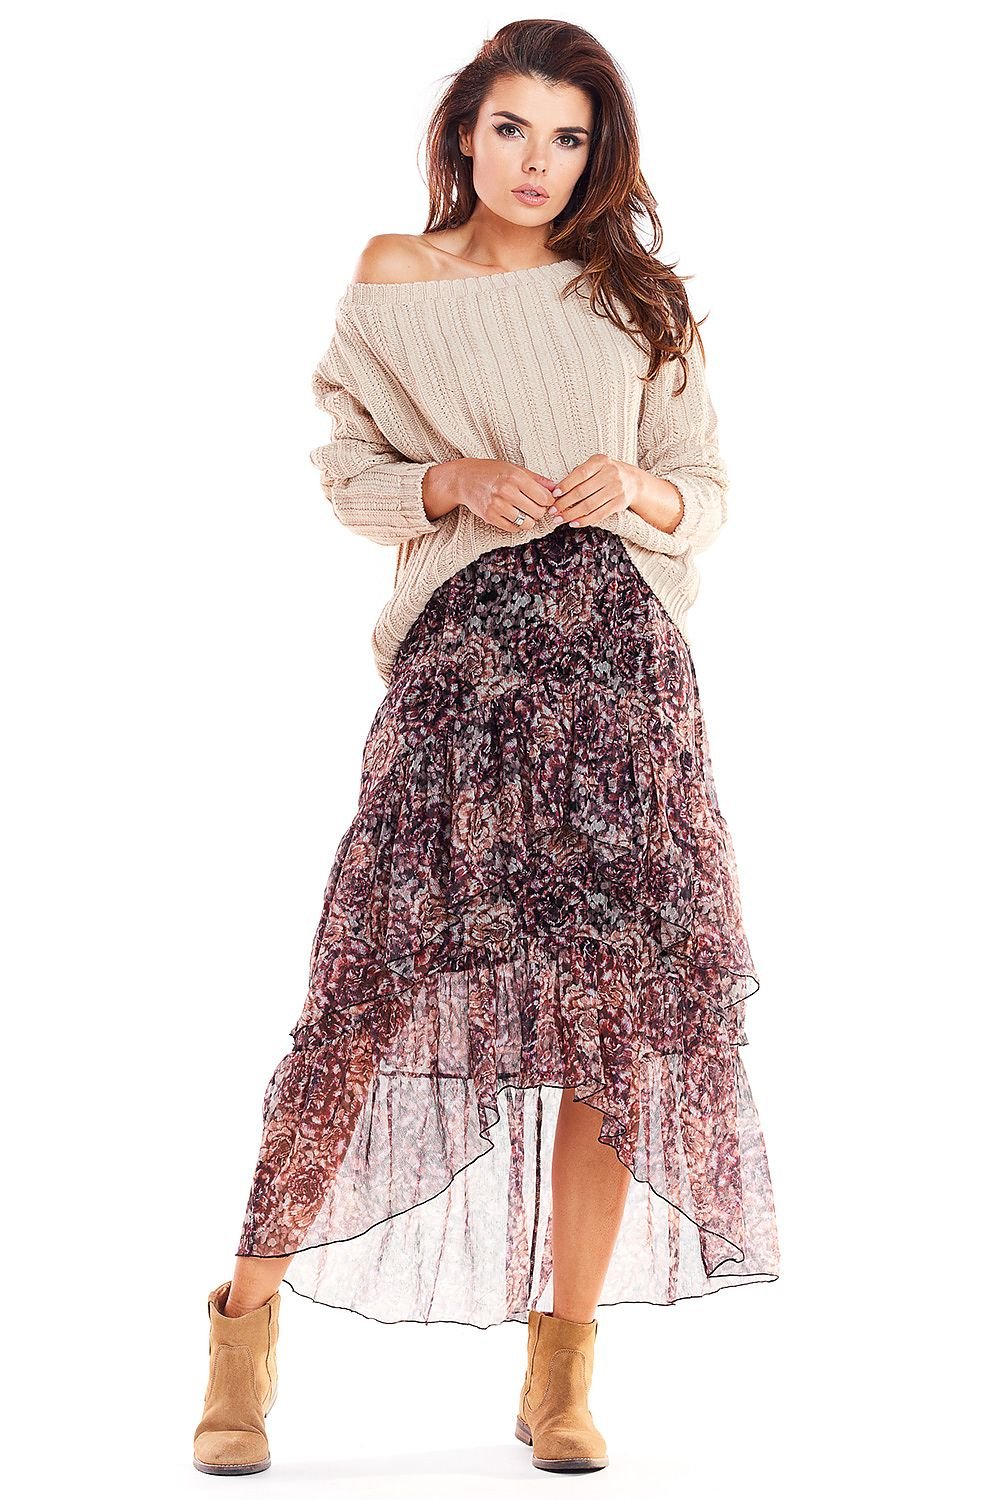 Jupe longue boheme chic à motif floral en tulle transparent, idéale pour look décontracté et élégant.